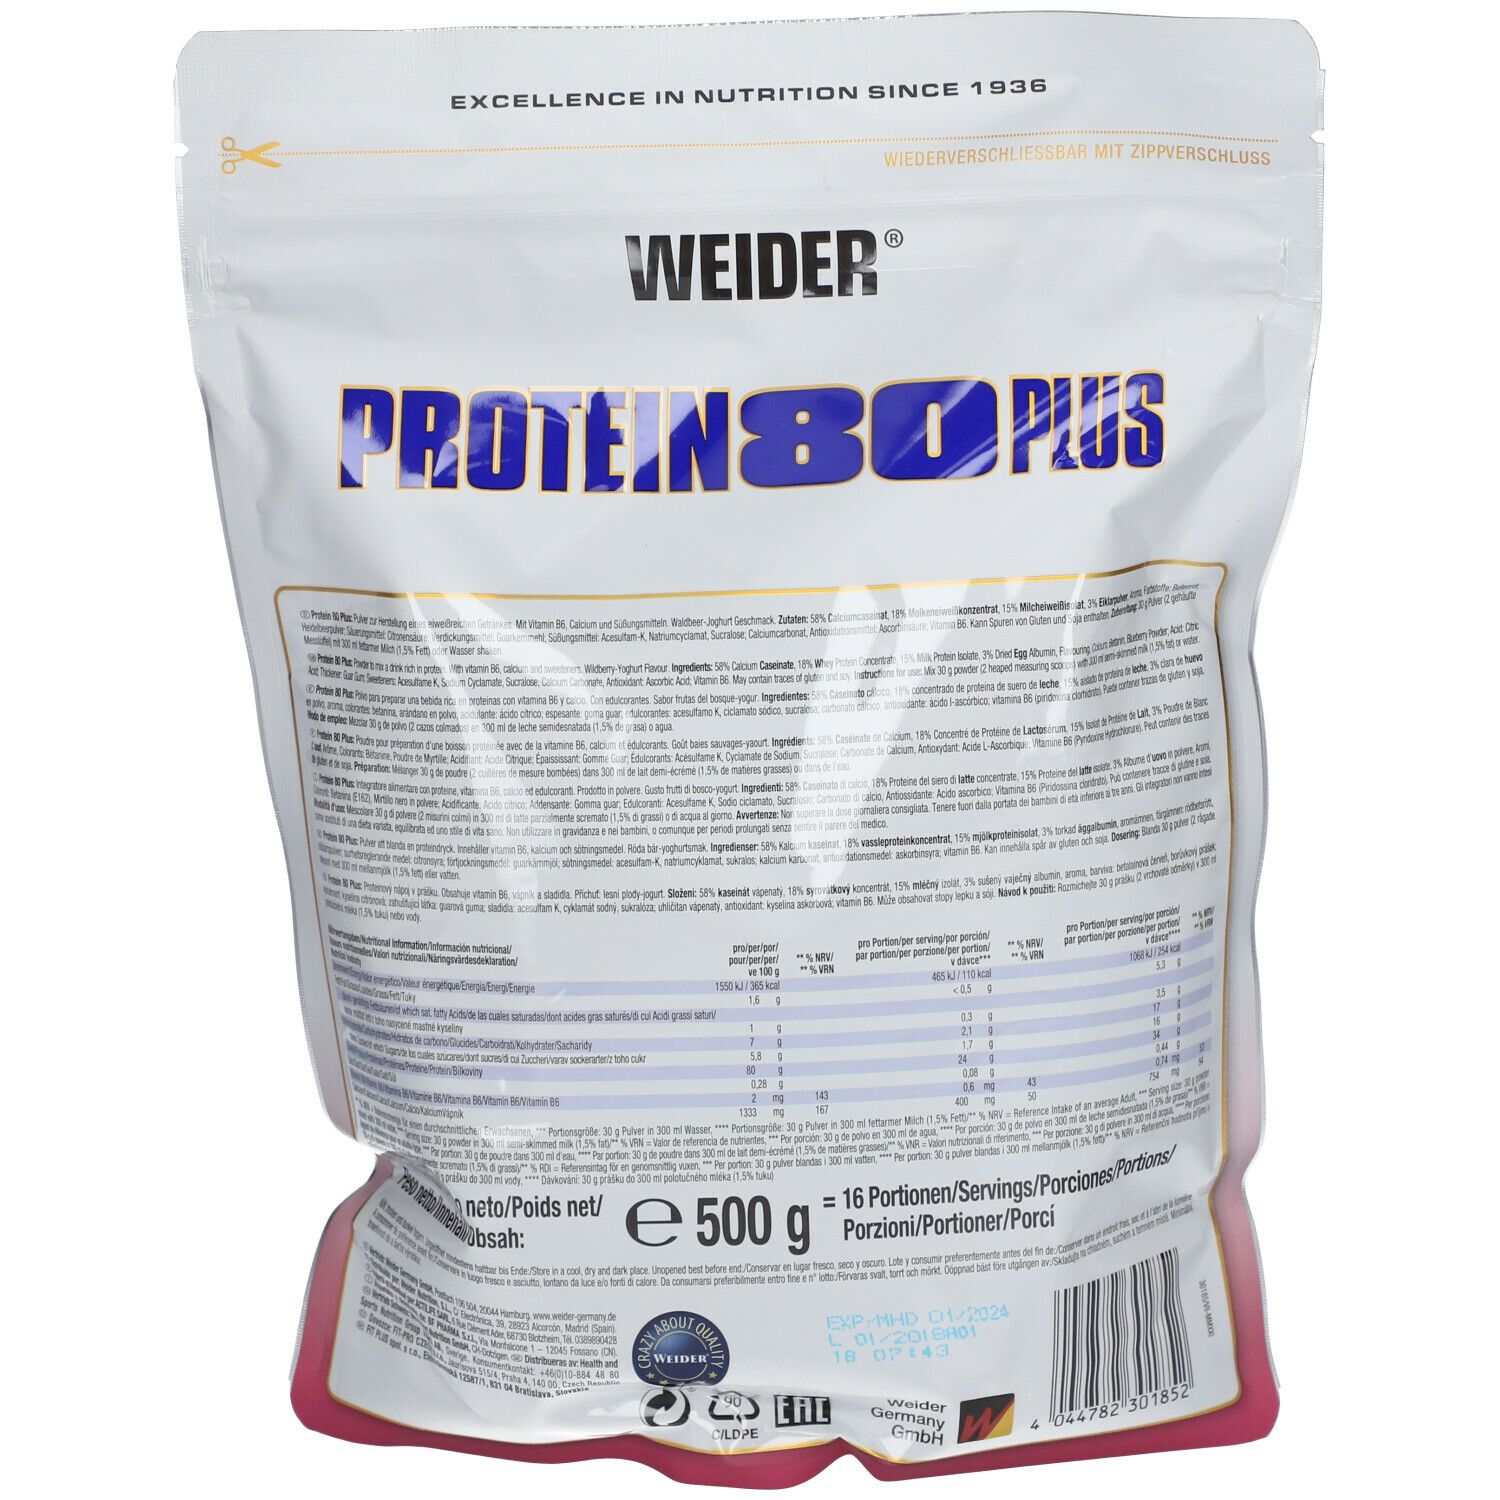 Weider Protein 80 Plus, Waldfrucht-Joghurt, Pulver